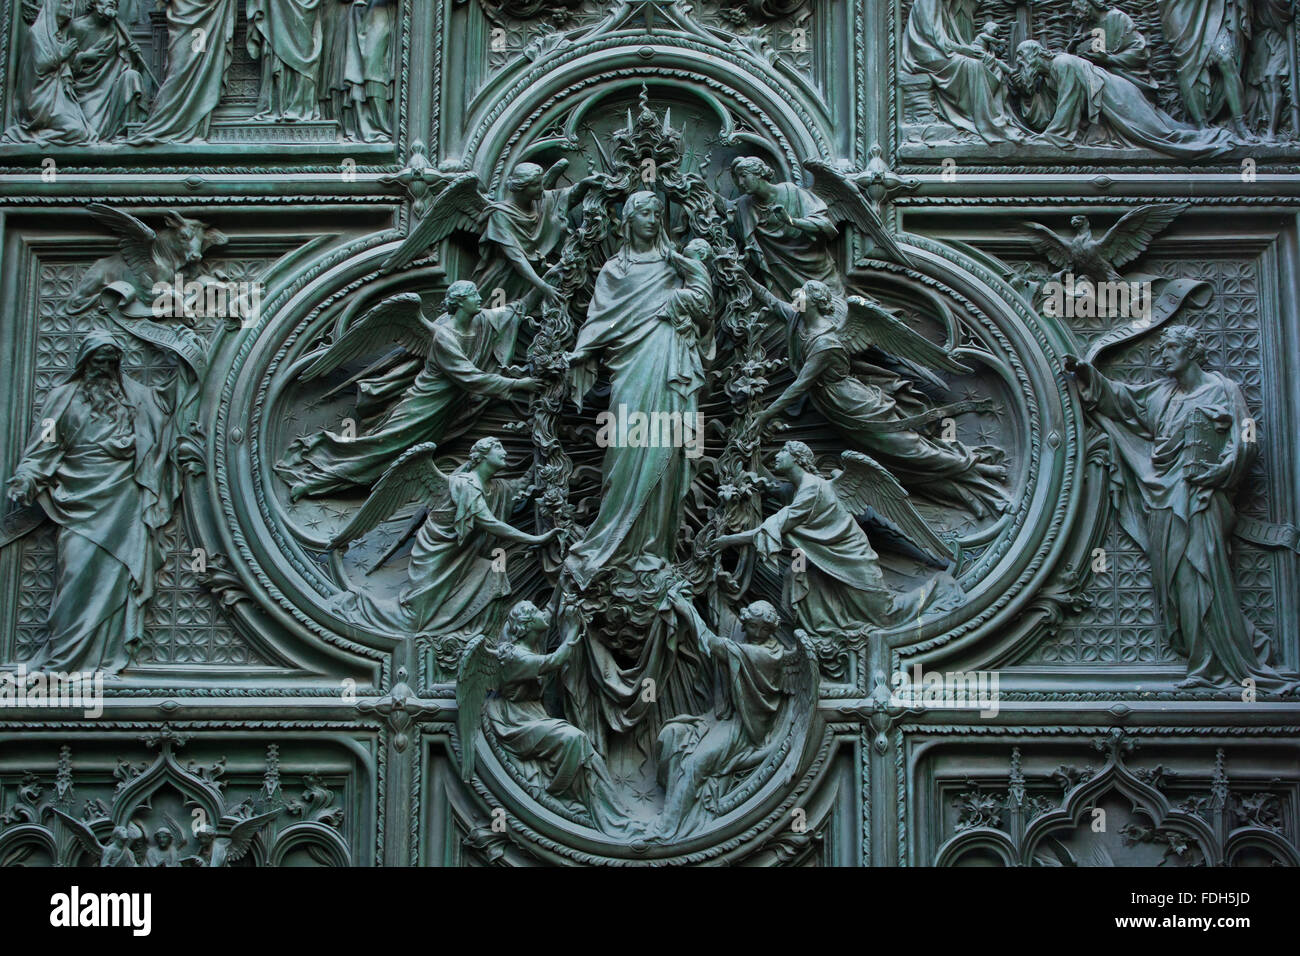 La asunción de la Virgen María. Detalle de la principal puerta de bronce de la catedral de Milán (Duomo di Milano) en Milán, Italia. Evangeli Foto de stock